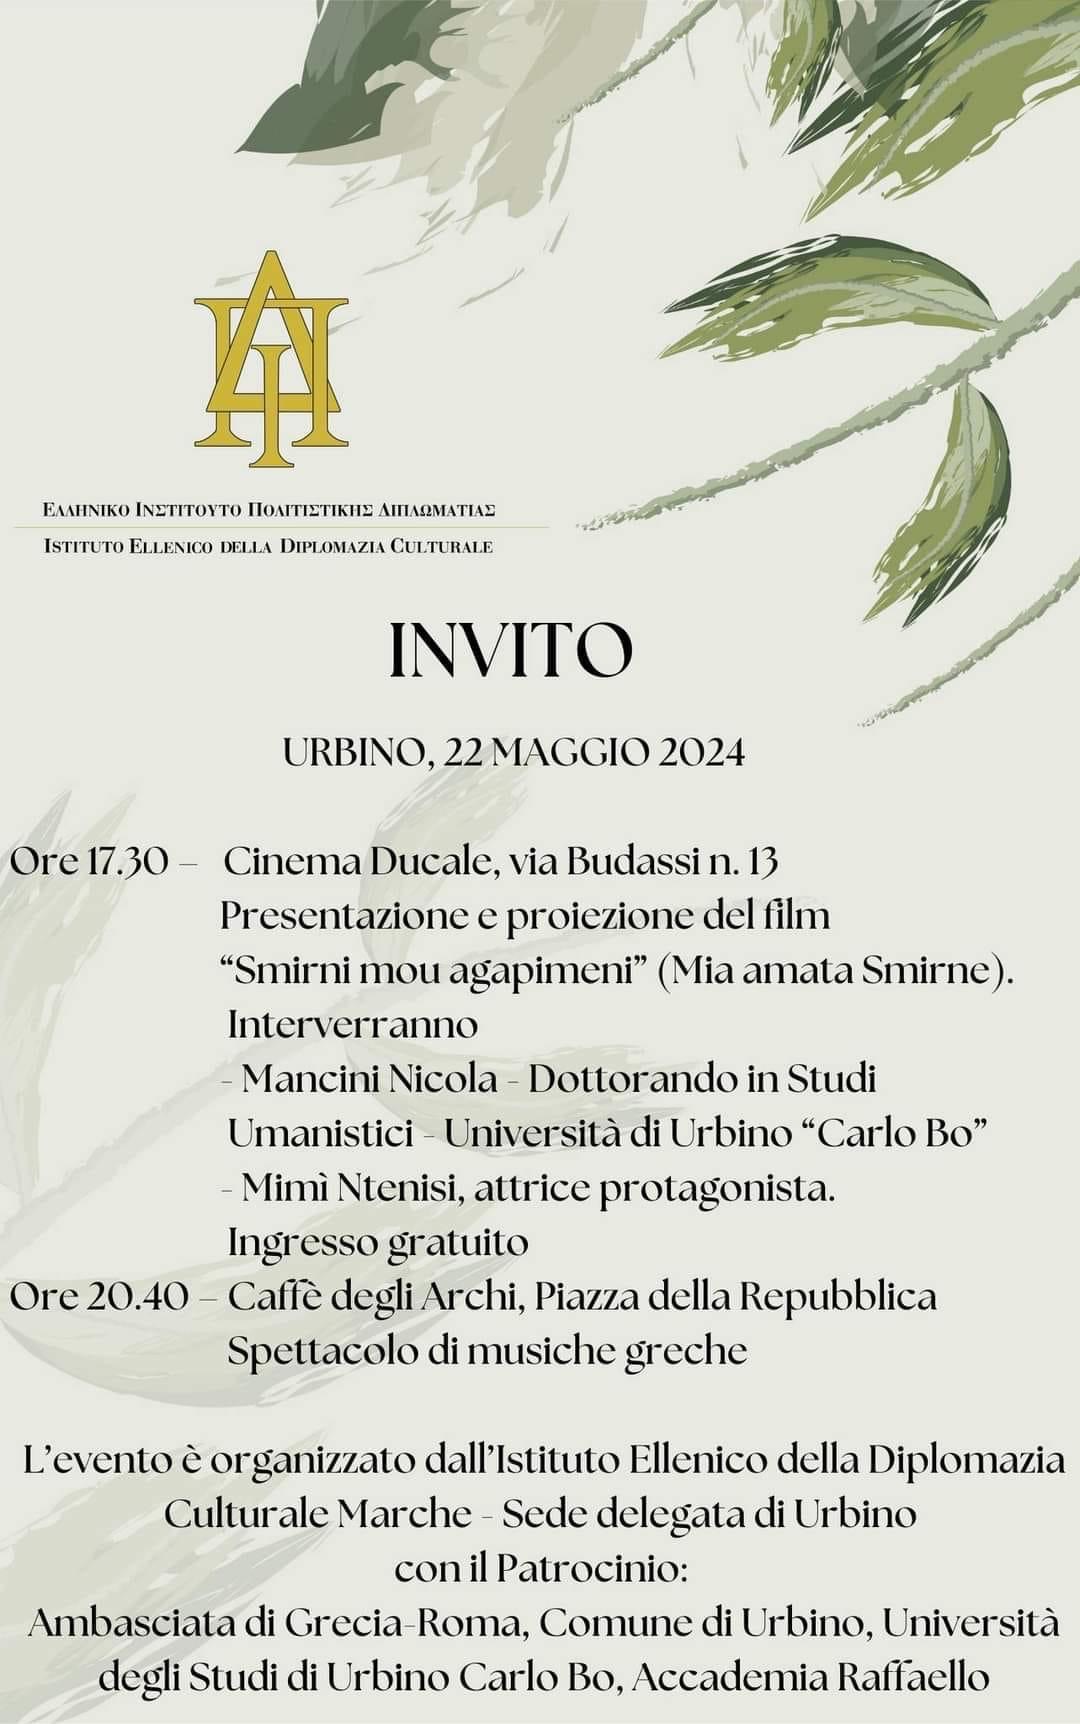 Urbino 22 maggio